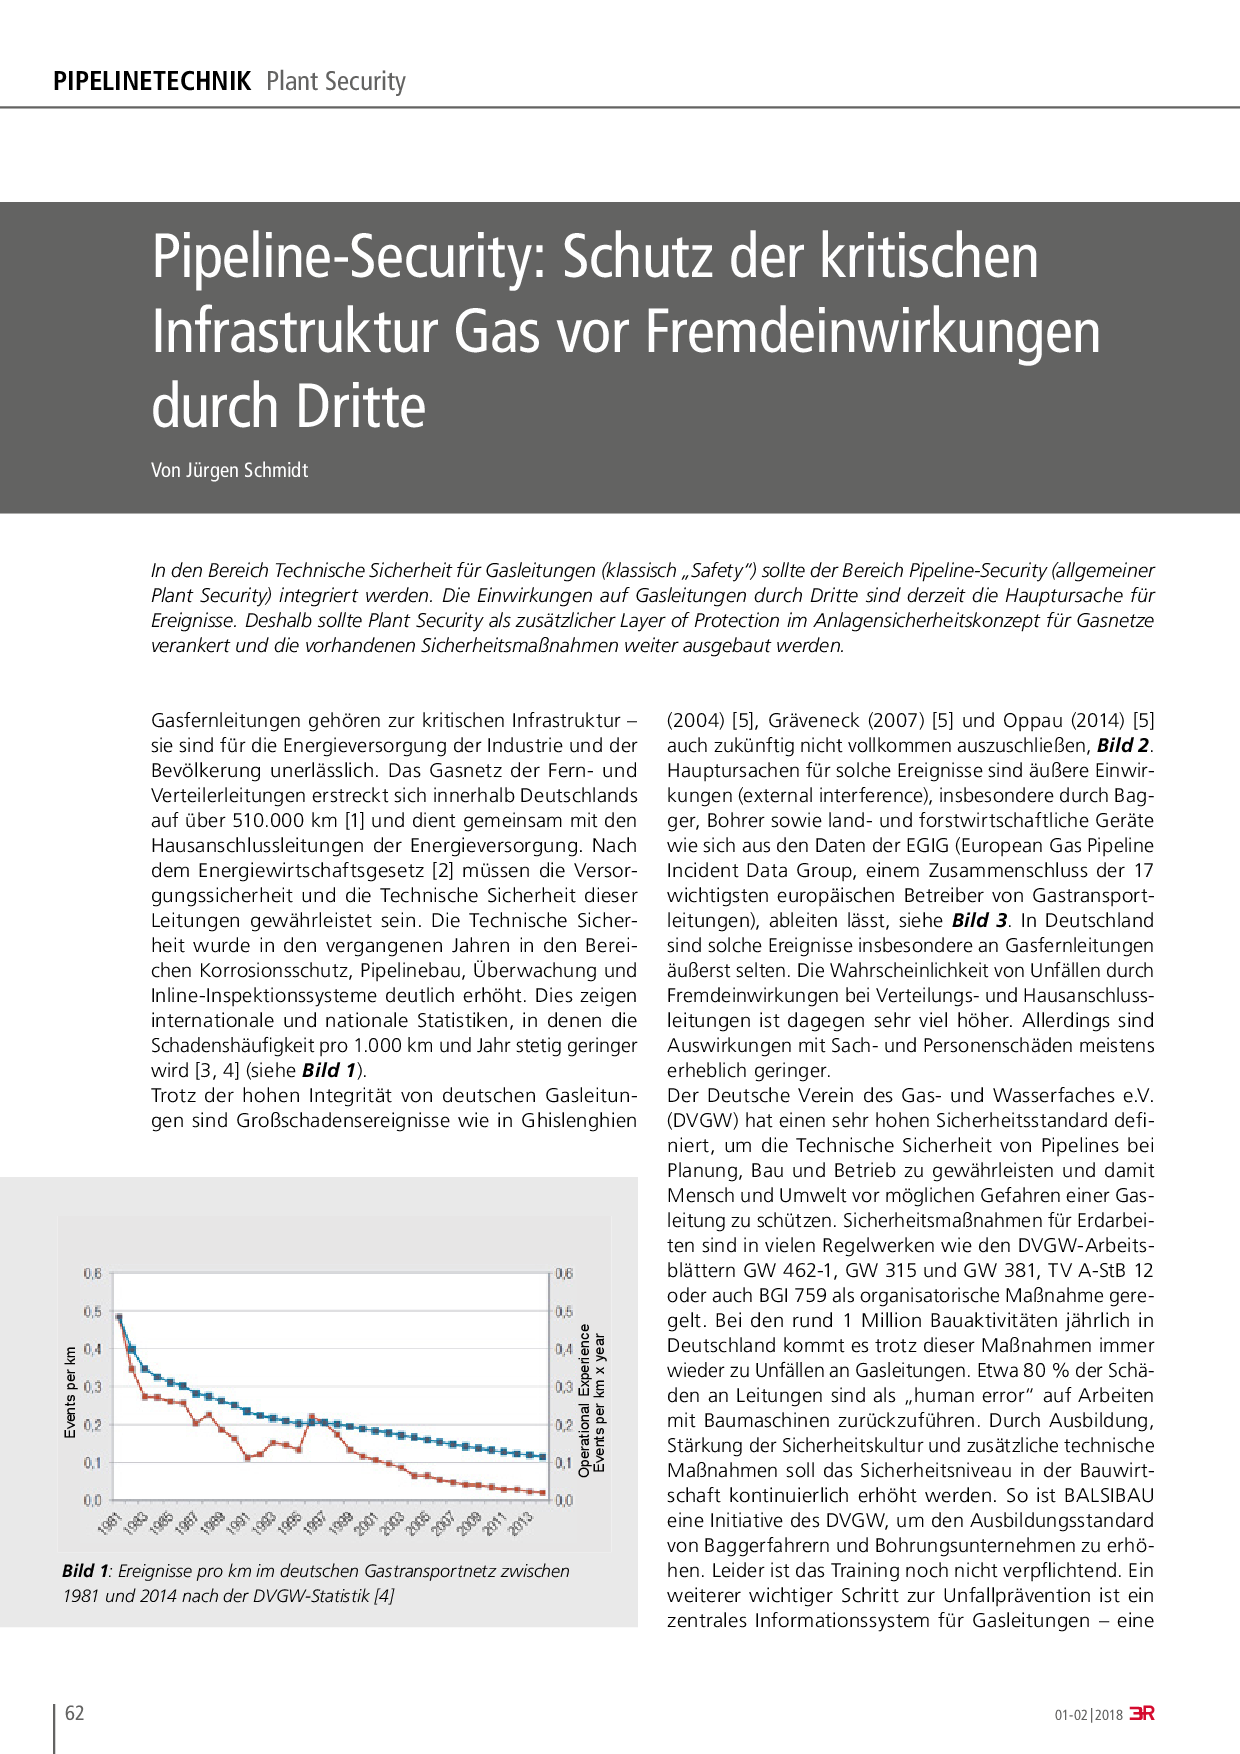 Pipeline-Security: Schutz der kritischen Infrastruktur Gas vor Fremdeinwirkungen durch Dritte